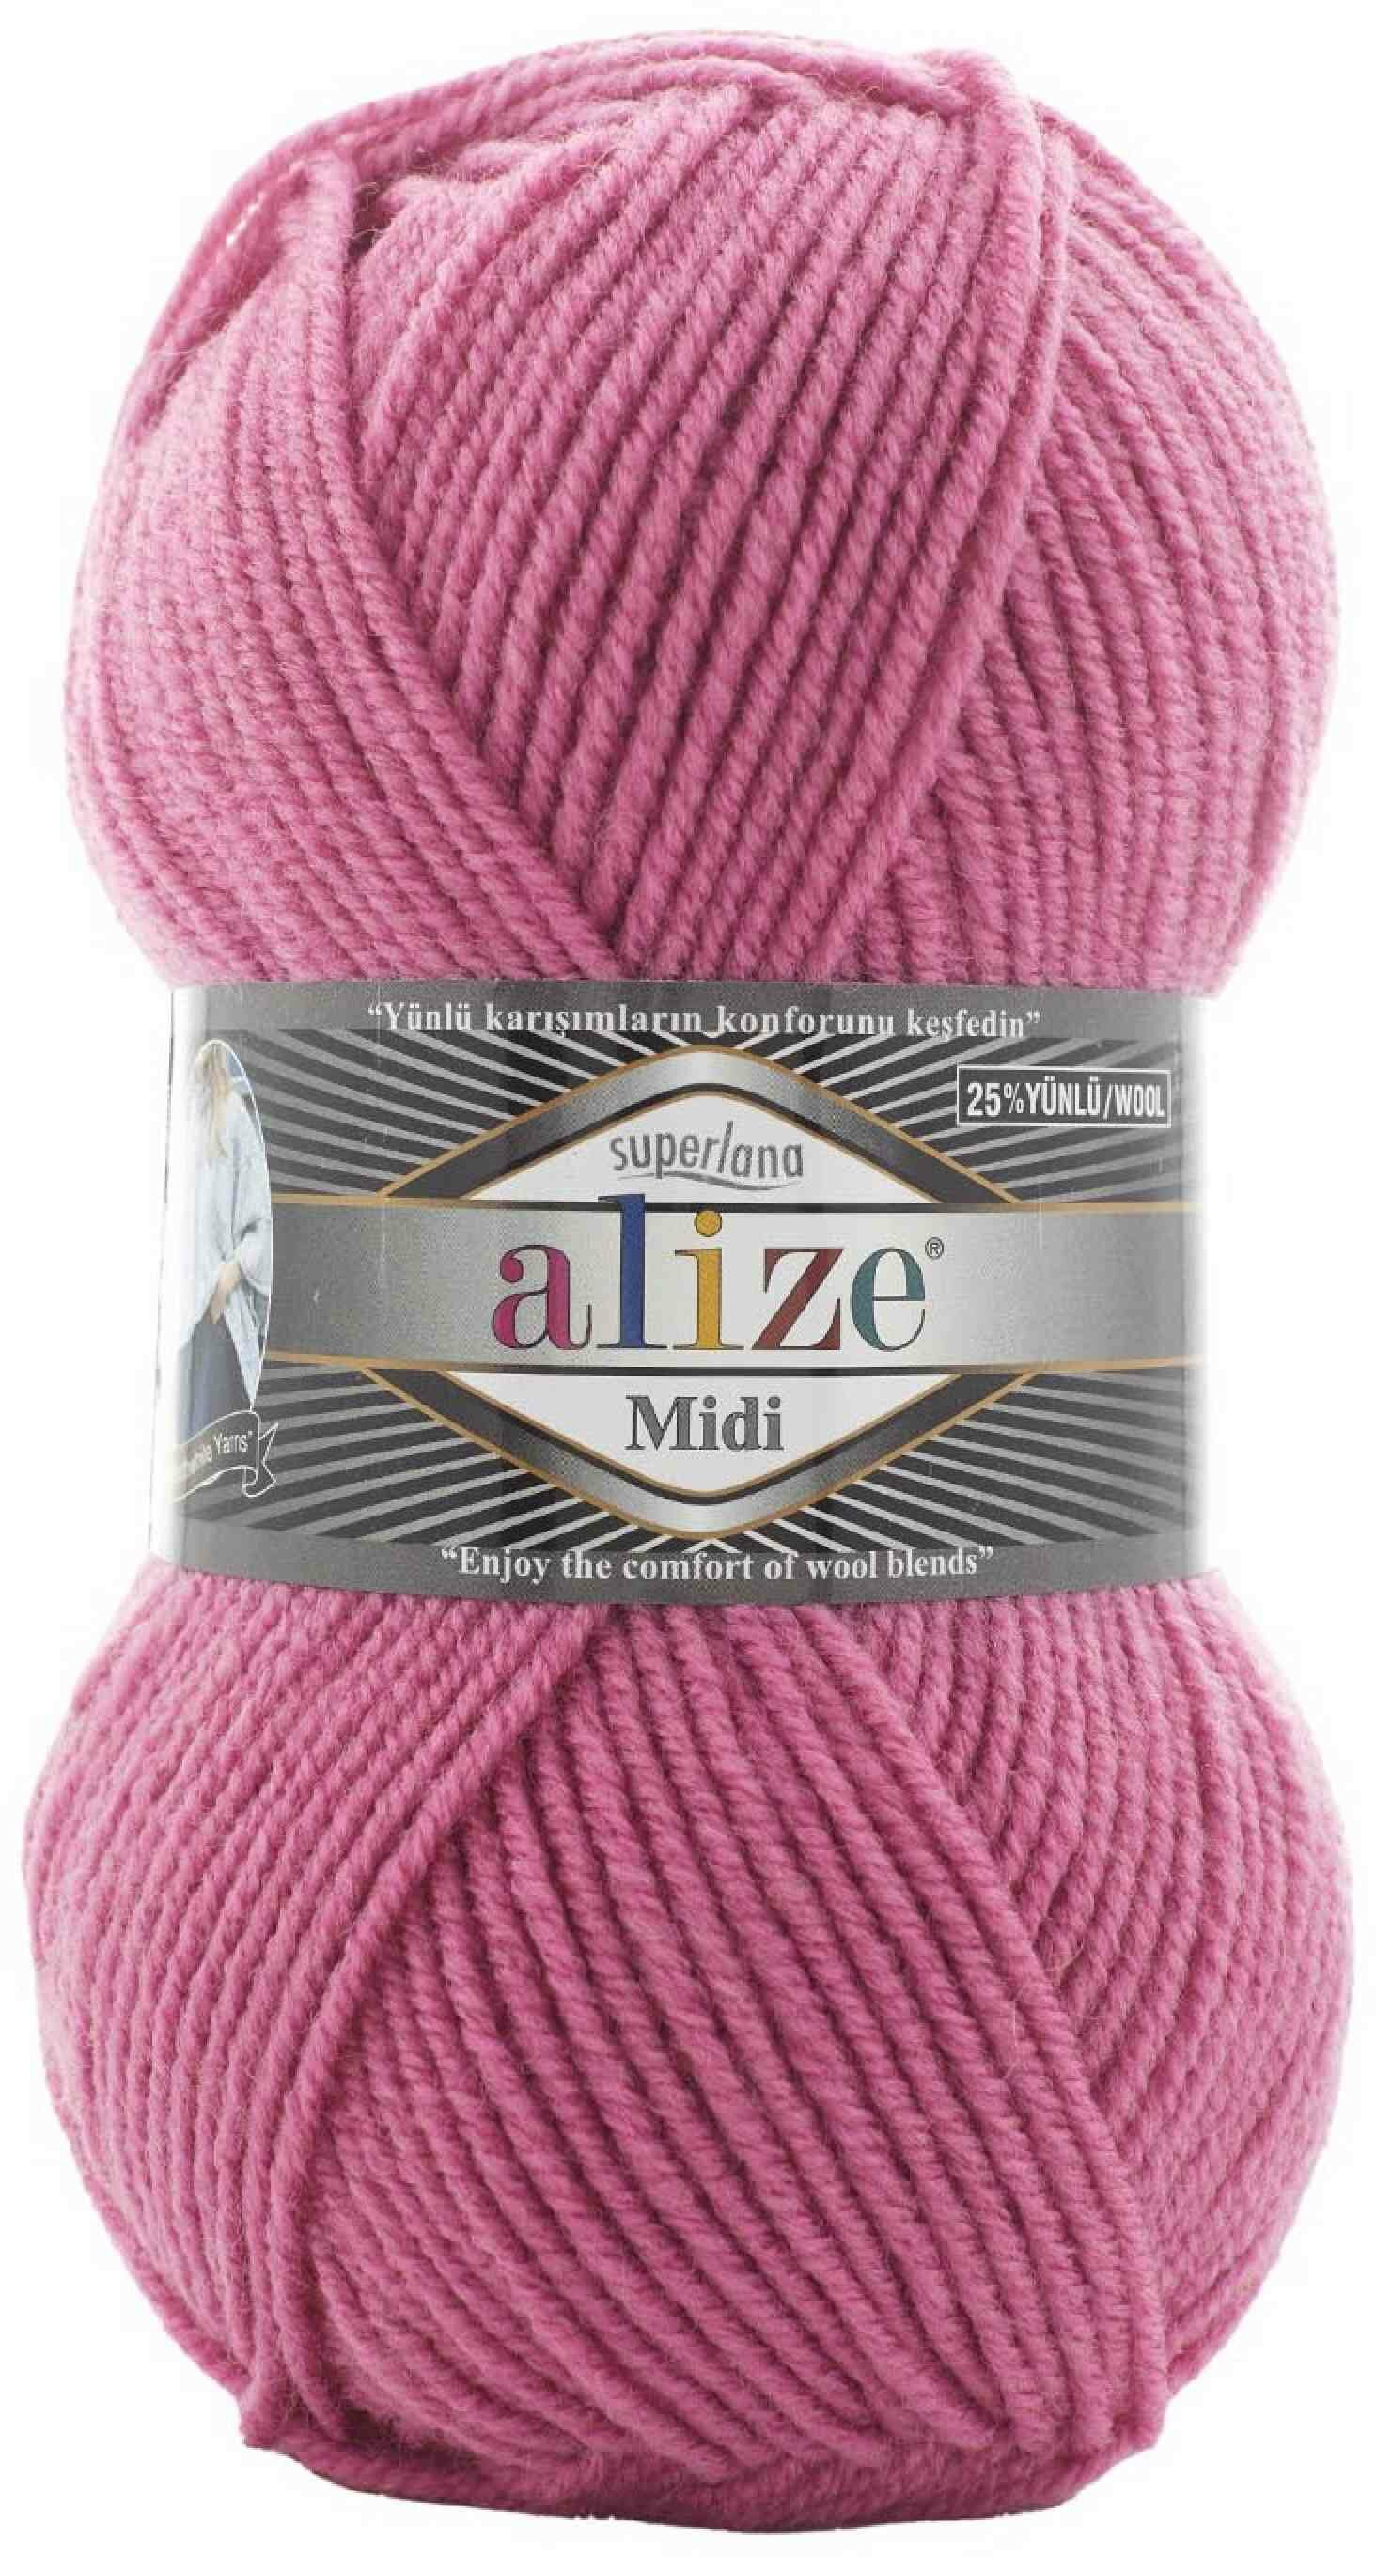 Пряжа Alize Superlana Midi темно-розовый (178), 25%шерсть/75%акрил, 170м, 100г, 1шт